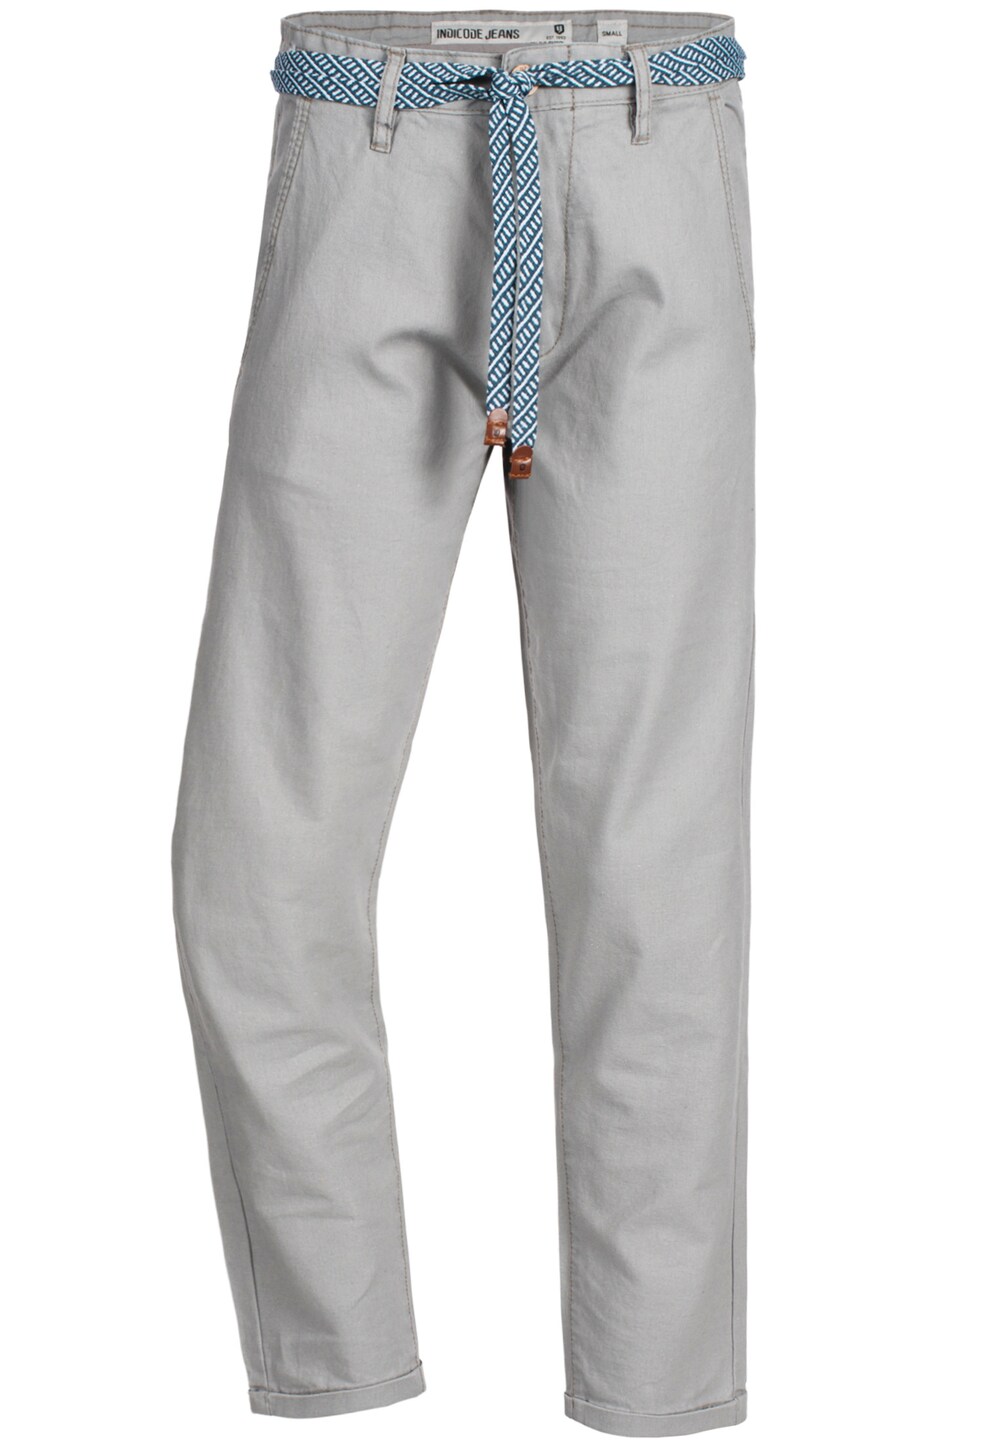 Обычные брюки INDICODE JEANS Haverfiel, дымчато-серый обычные брюки карго indicode jeans albert дымчато серый